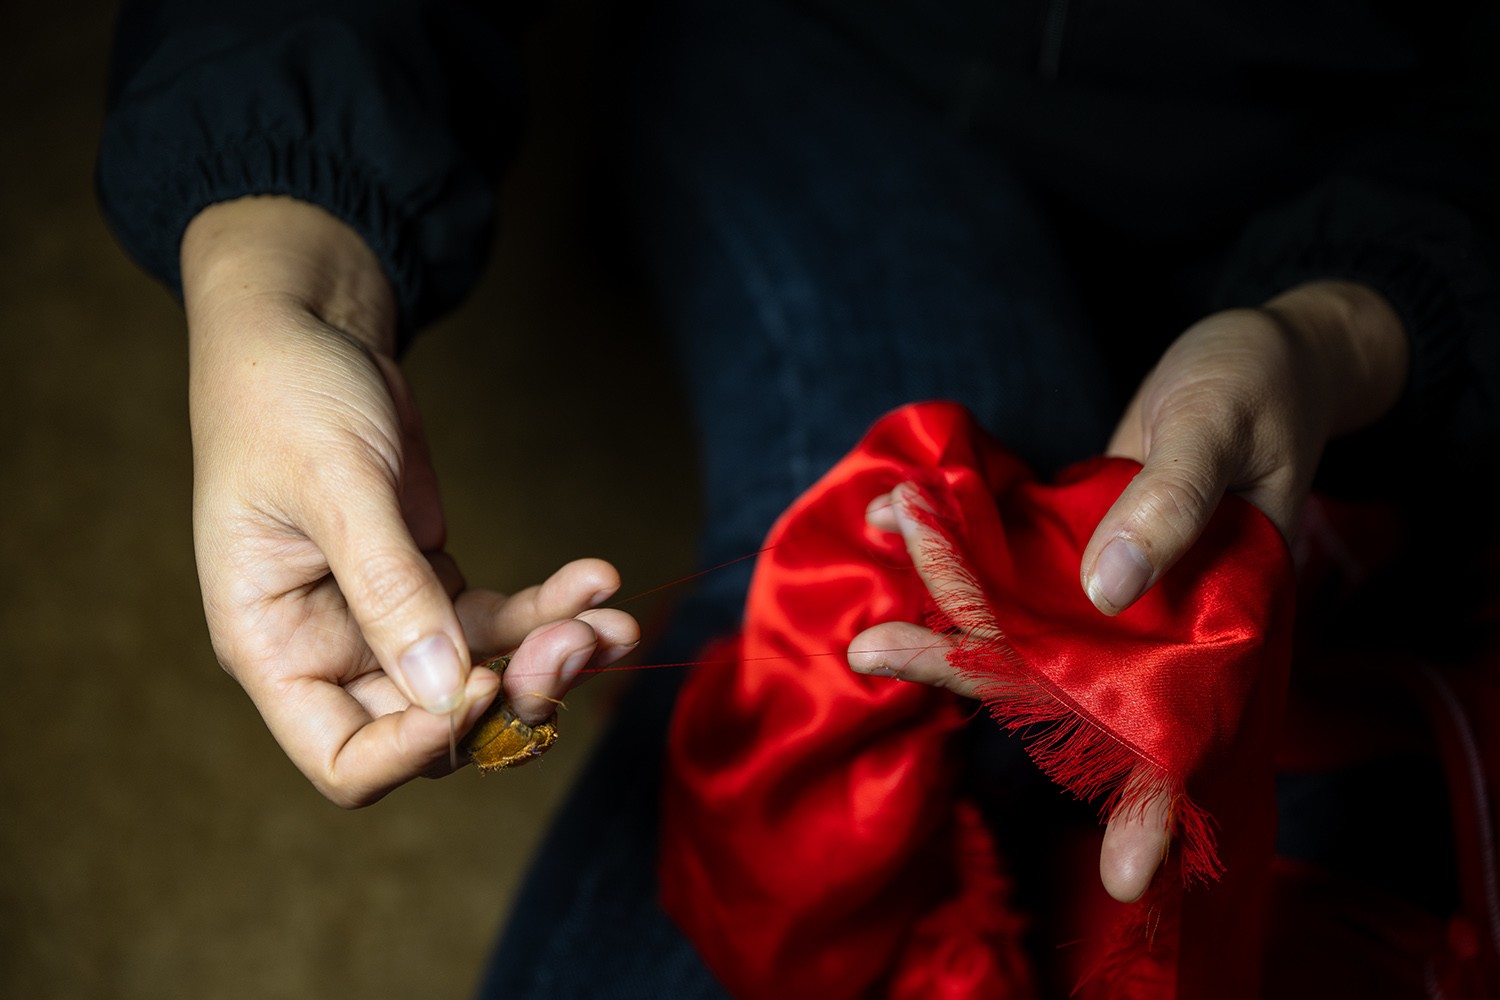 Người thợ may dùng chính vải trong miếng vải may áo để làm chỉ khâu, khiến cho đường khâu mềm mại và không lộ chỉ